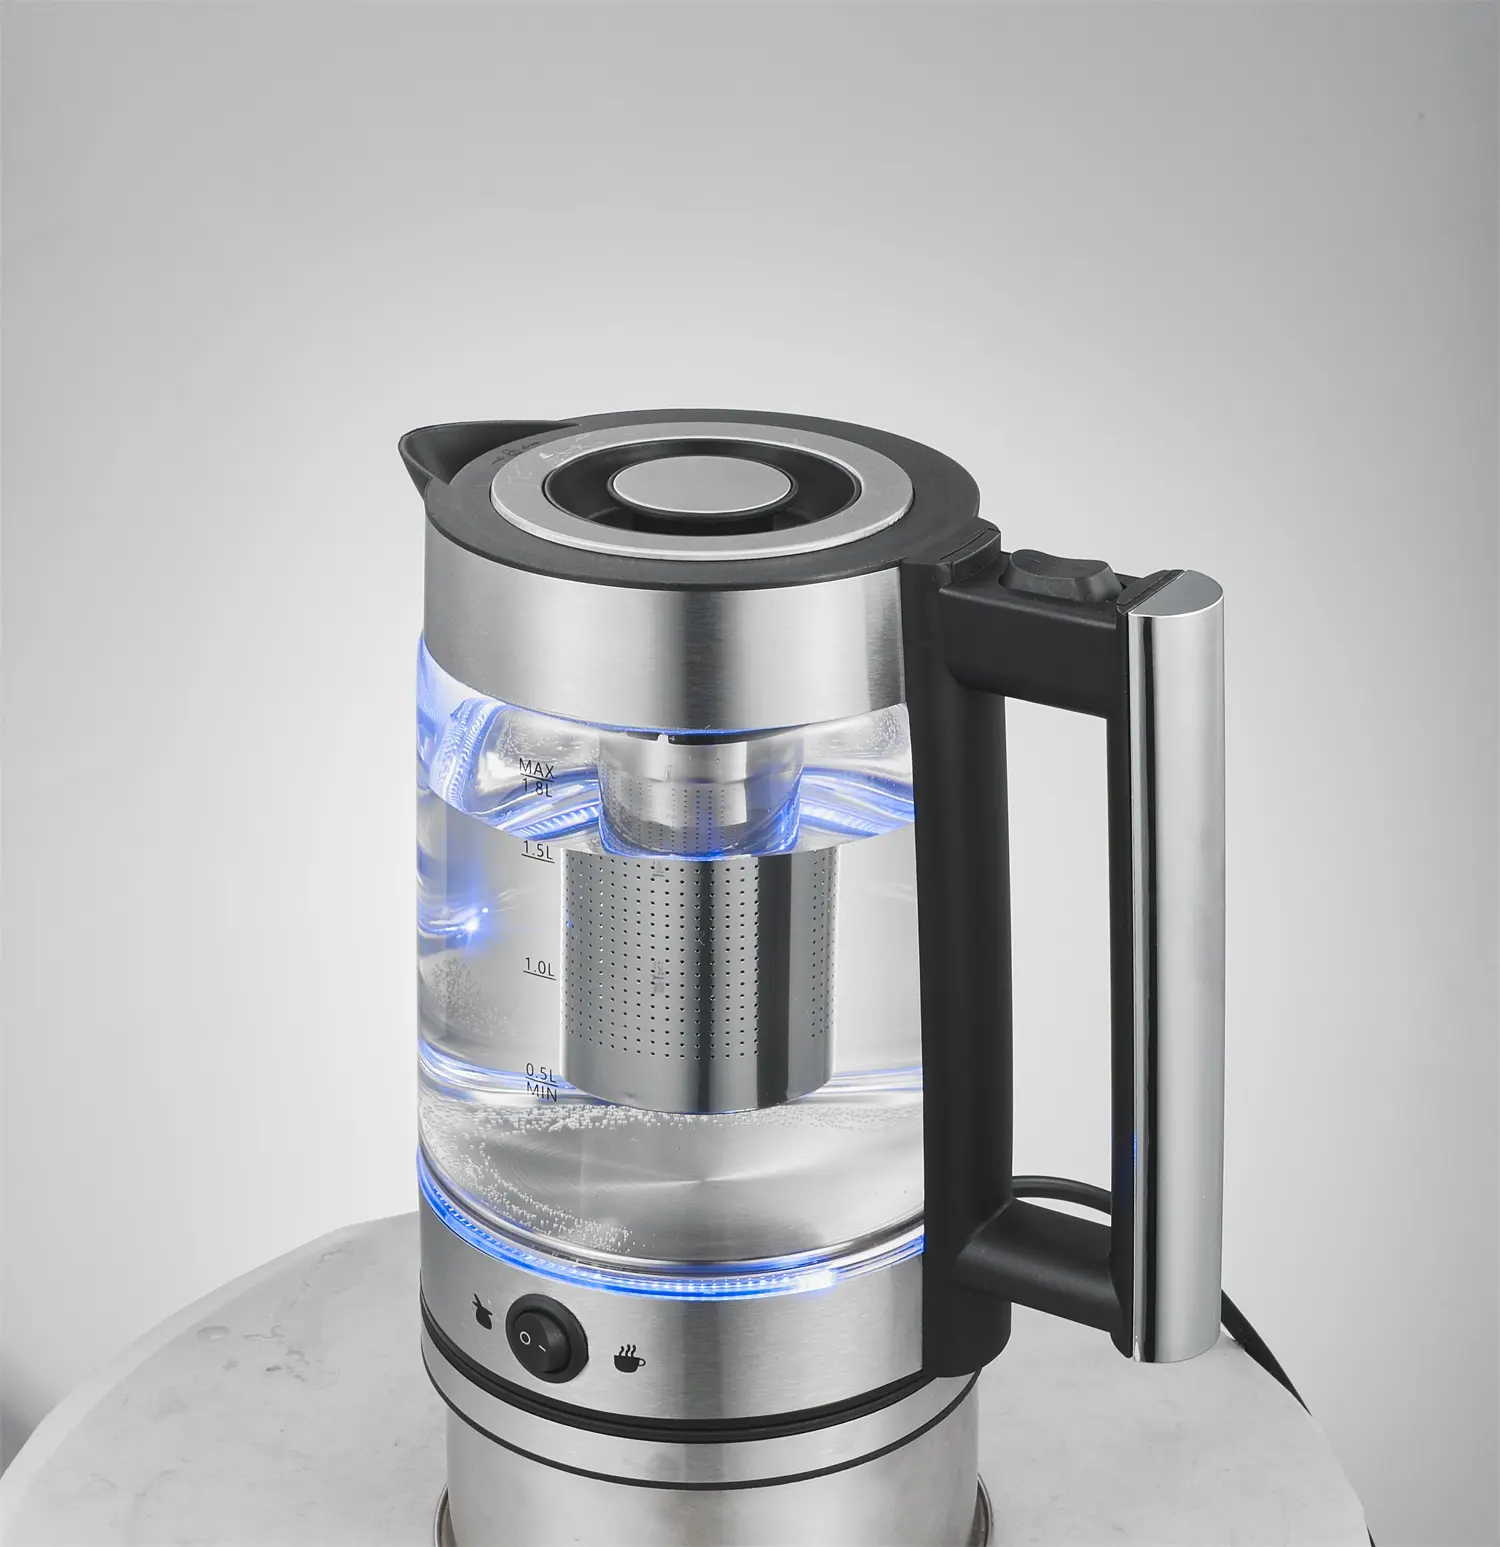 Elektrikli ısıtıcılar 1.8L elektrikli çay makinesi makine cam vücut su kazanı sıcak tutmak özelliği ile çin'de yapılan